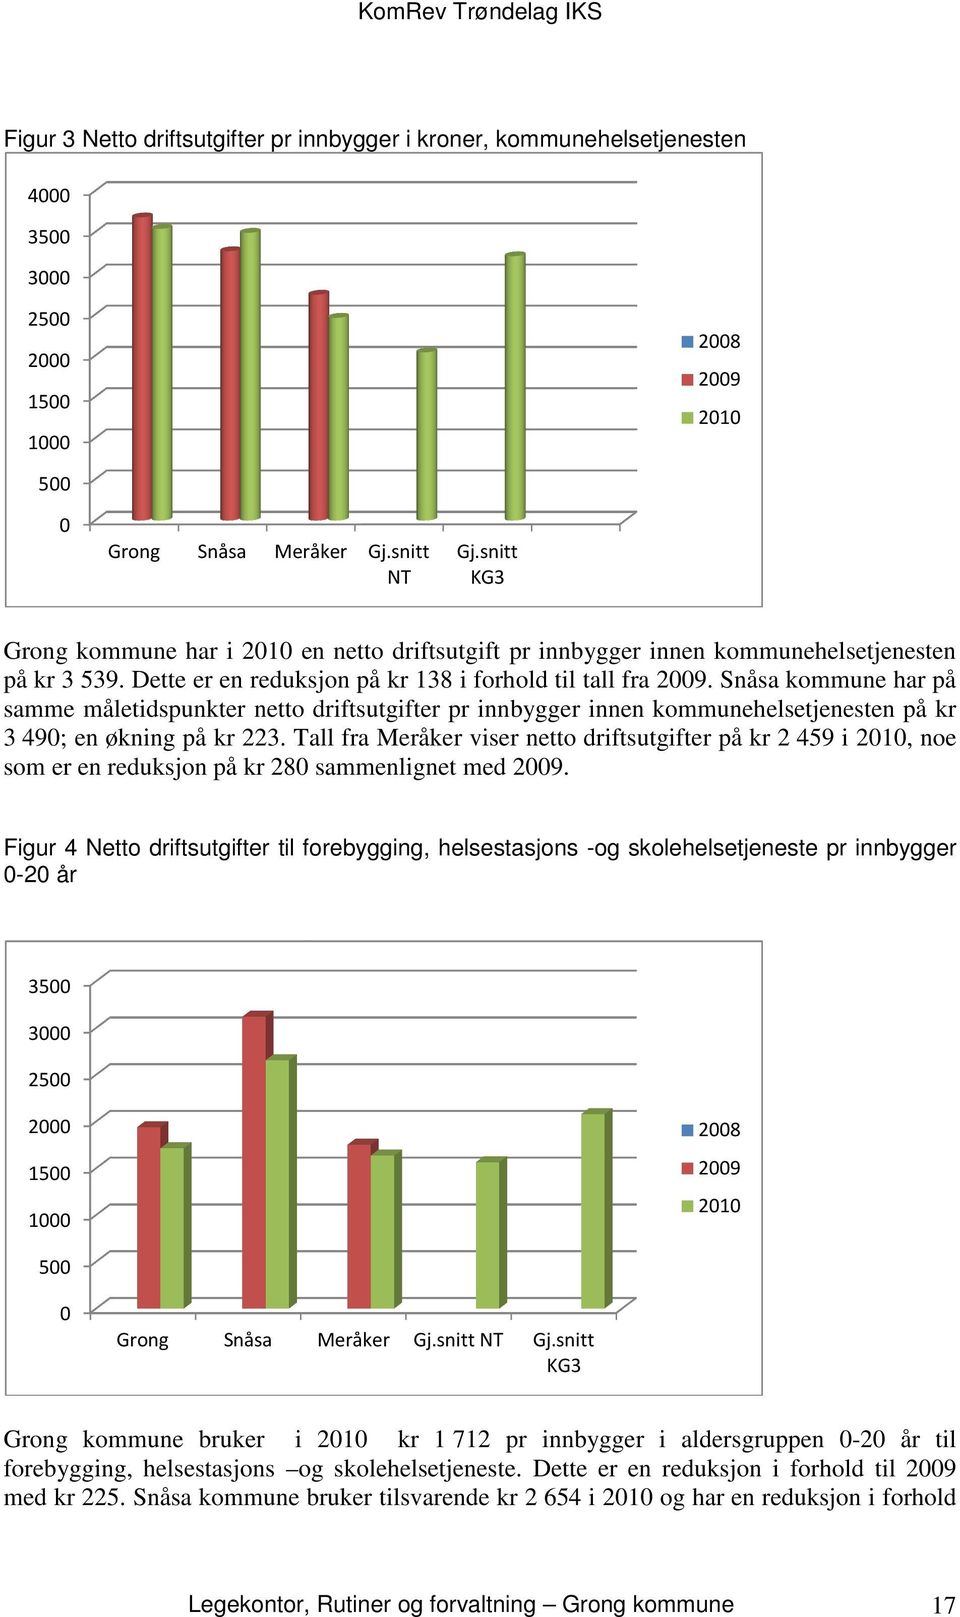 Snåsa kommune har på samme måletidspunkter netto driftsutgifter pr innbygger innen kommunehelsetjenesten på kr 3 490; en økning på kr 223.